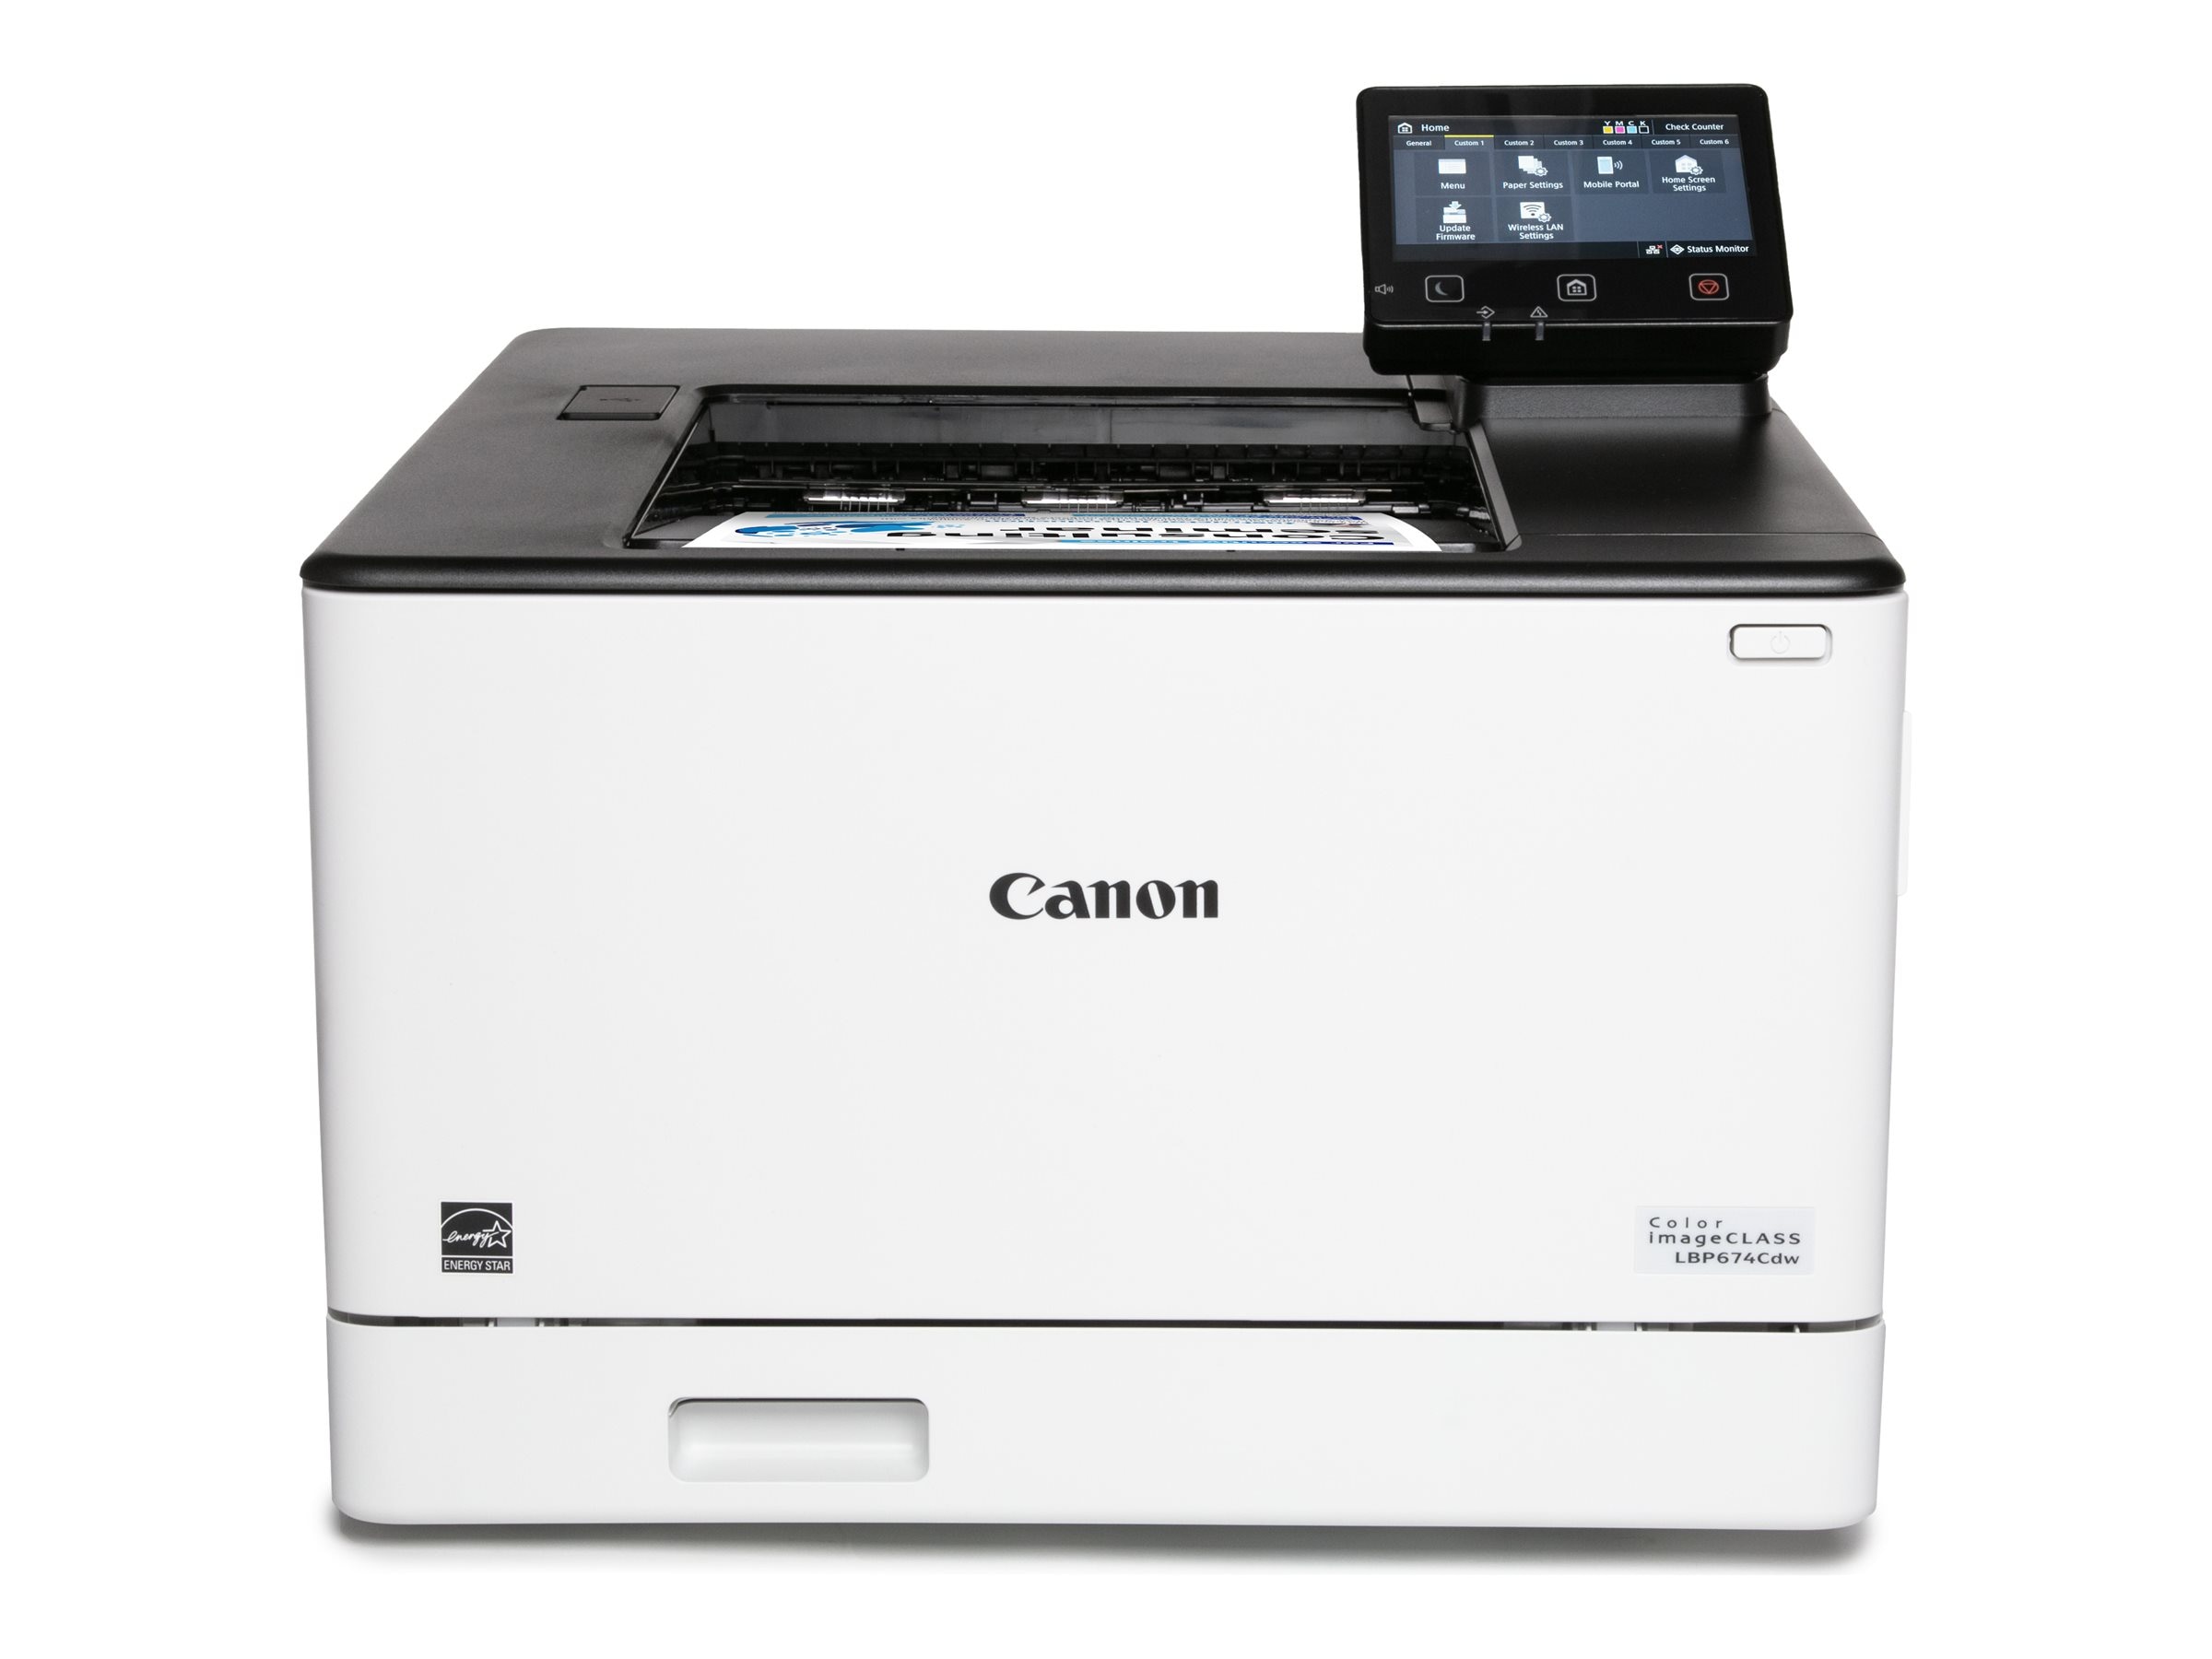 Canon Color imageCLASS LBP674Cdw Printer (5456C006)